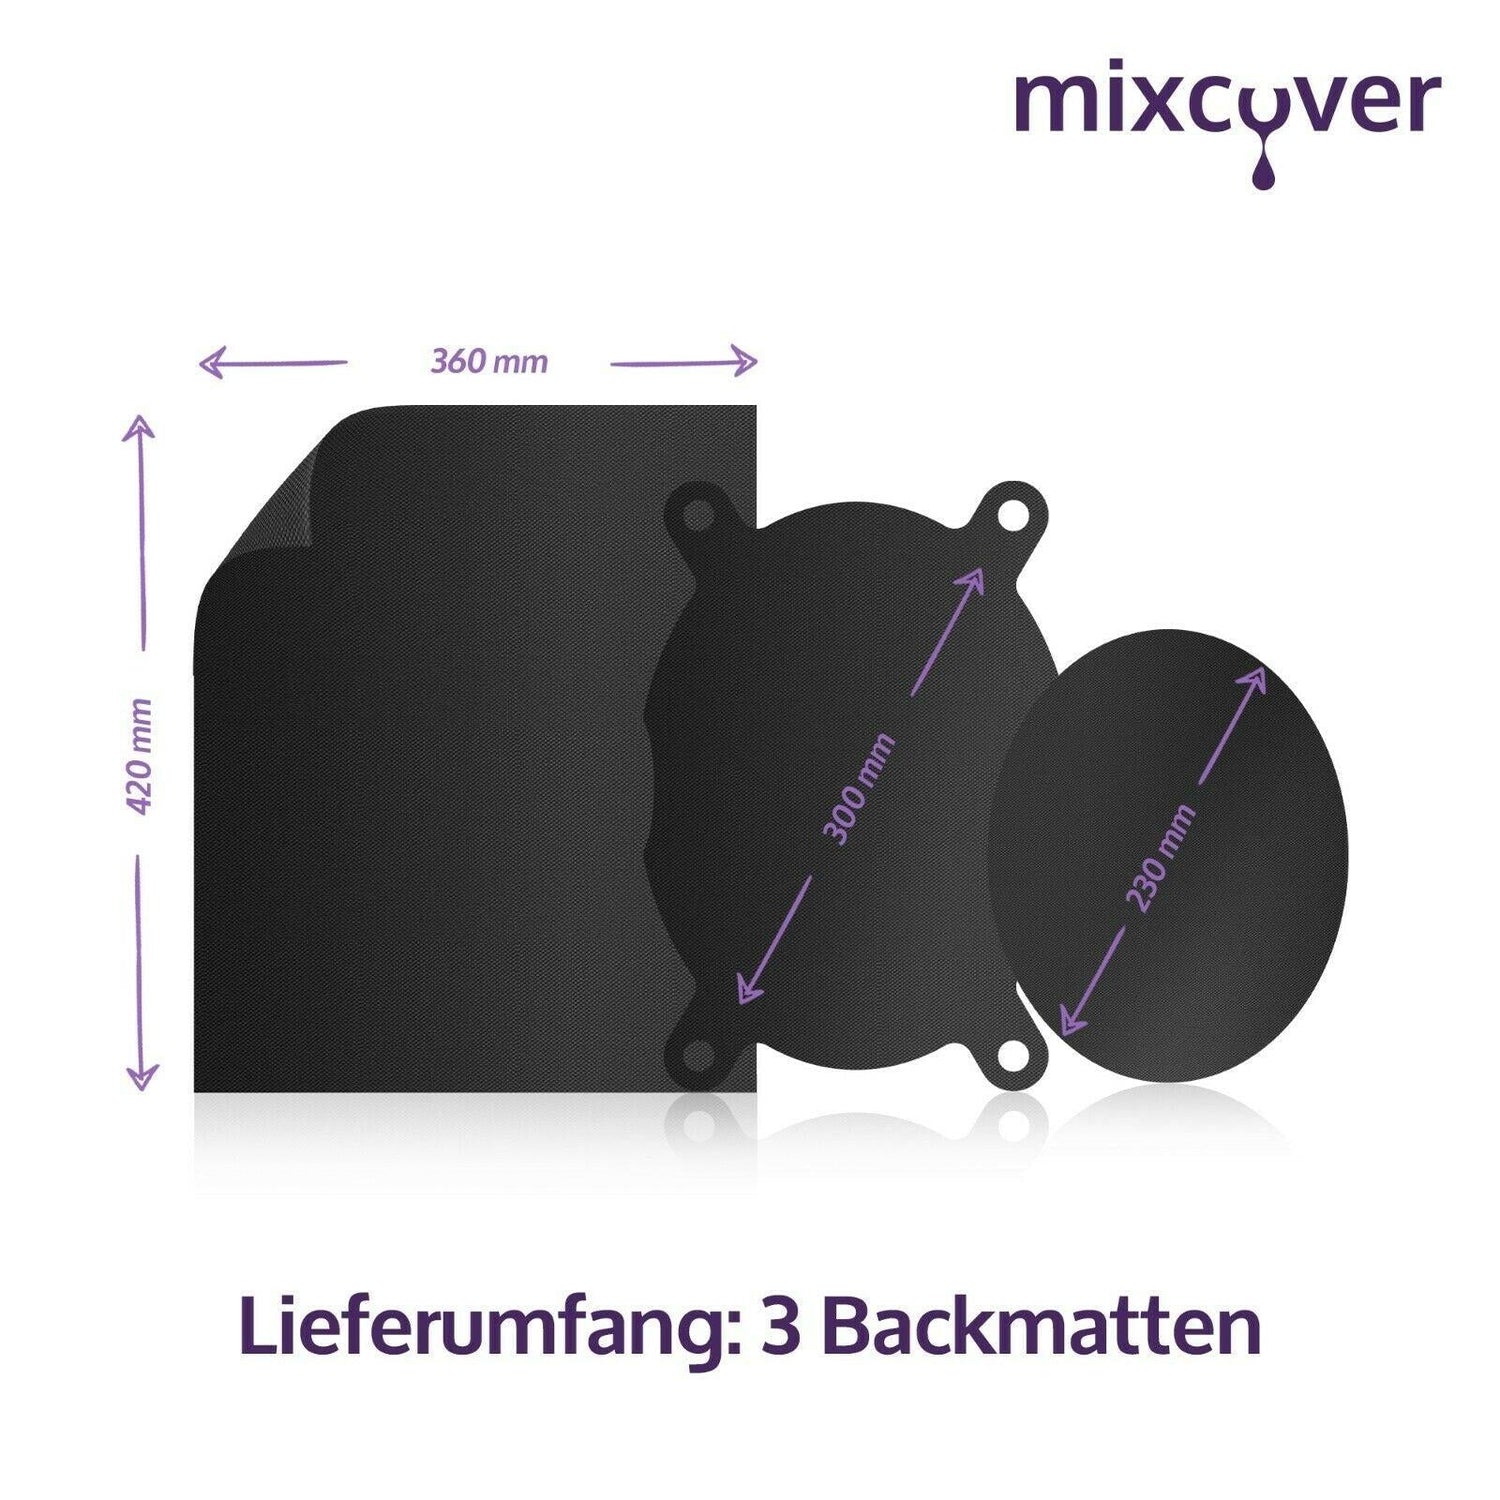 mixcover original Dauerbackfolie - Backpapier für Varoma Einlegeboden TM6, TM5, TM31, Thermomix Friend - wiederverwendbar und nachhaltig - Mixcover - Mixcover